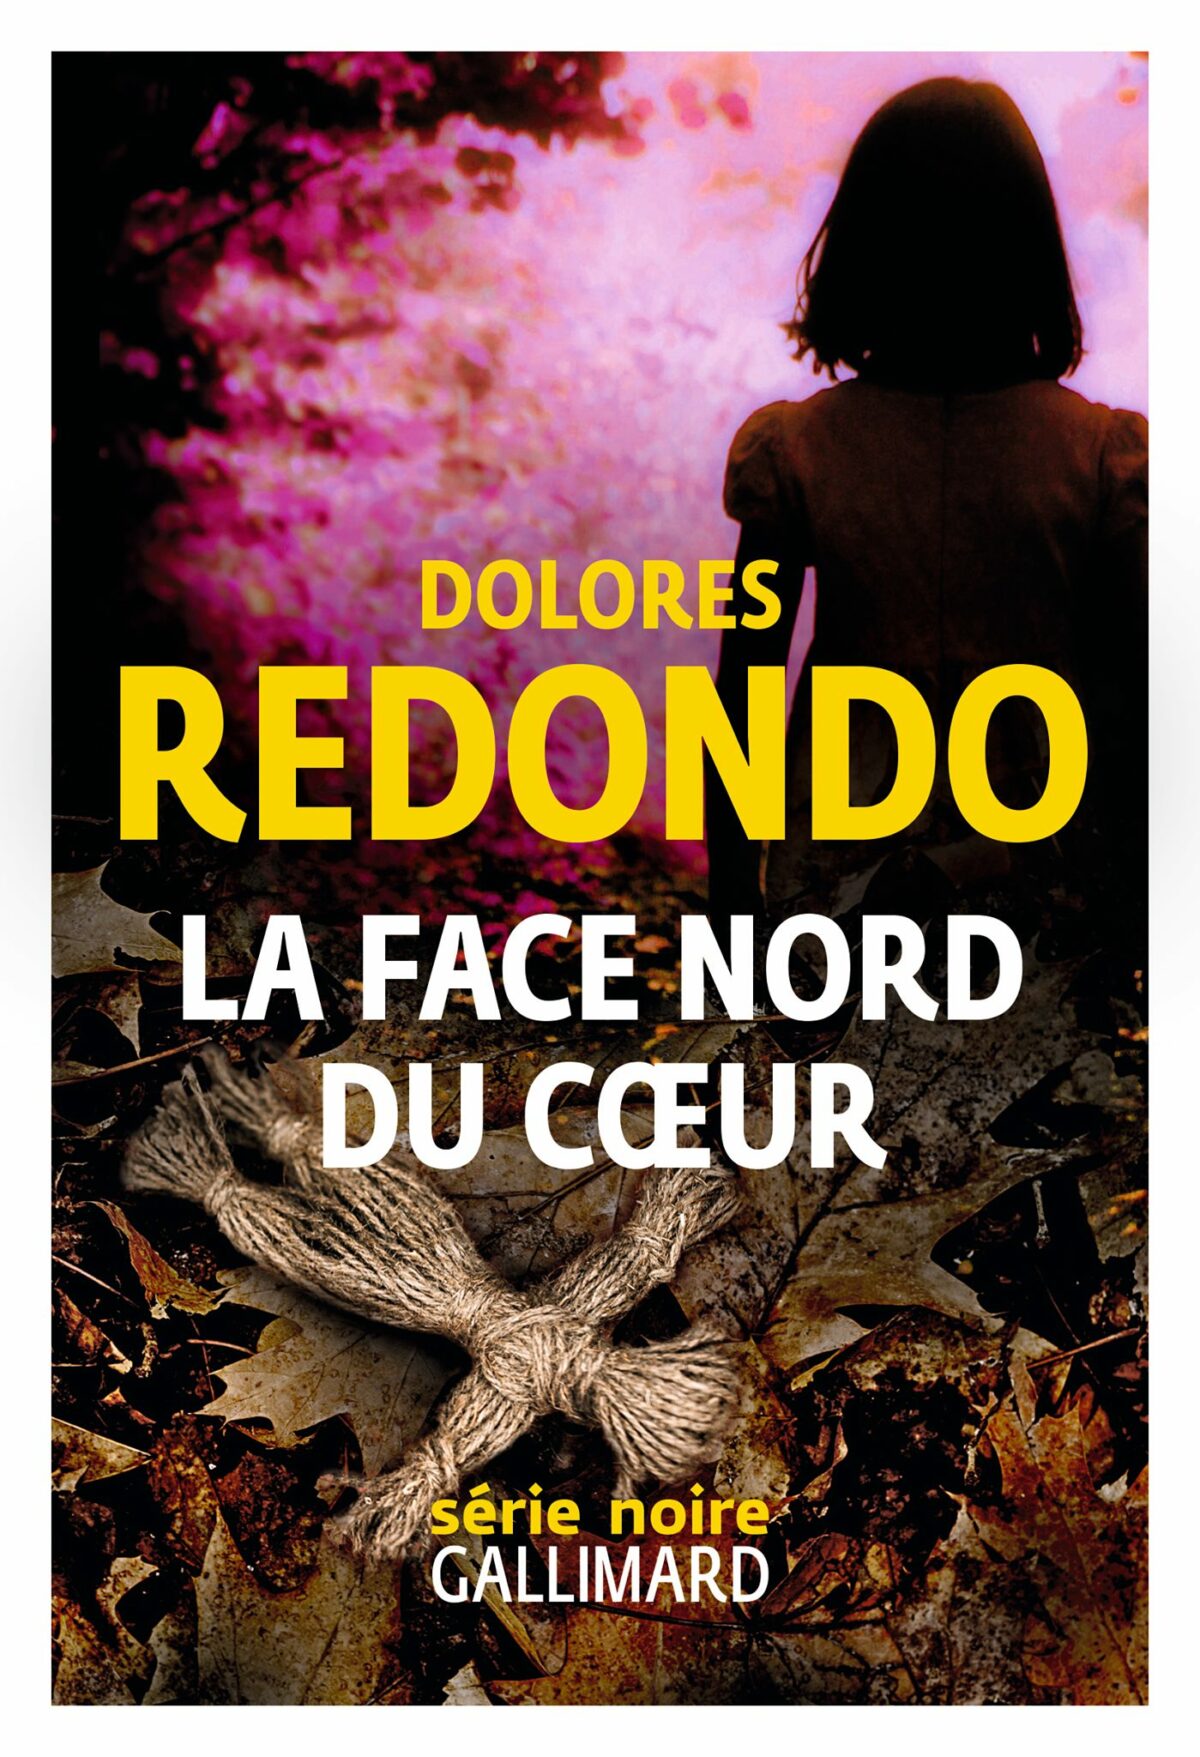 La face nord du cœur (La cara norte del corazon) de DOLORES REDONDO traduit par Anne Plantagenet Collection Série Noire, Gallimard.